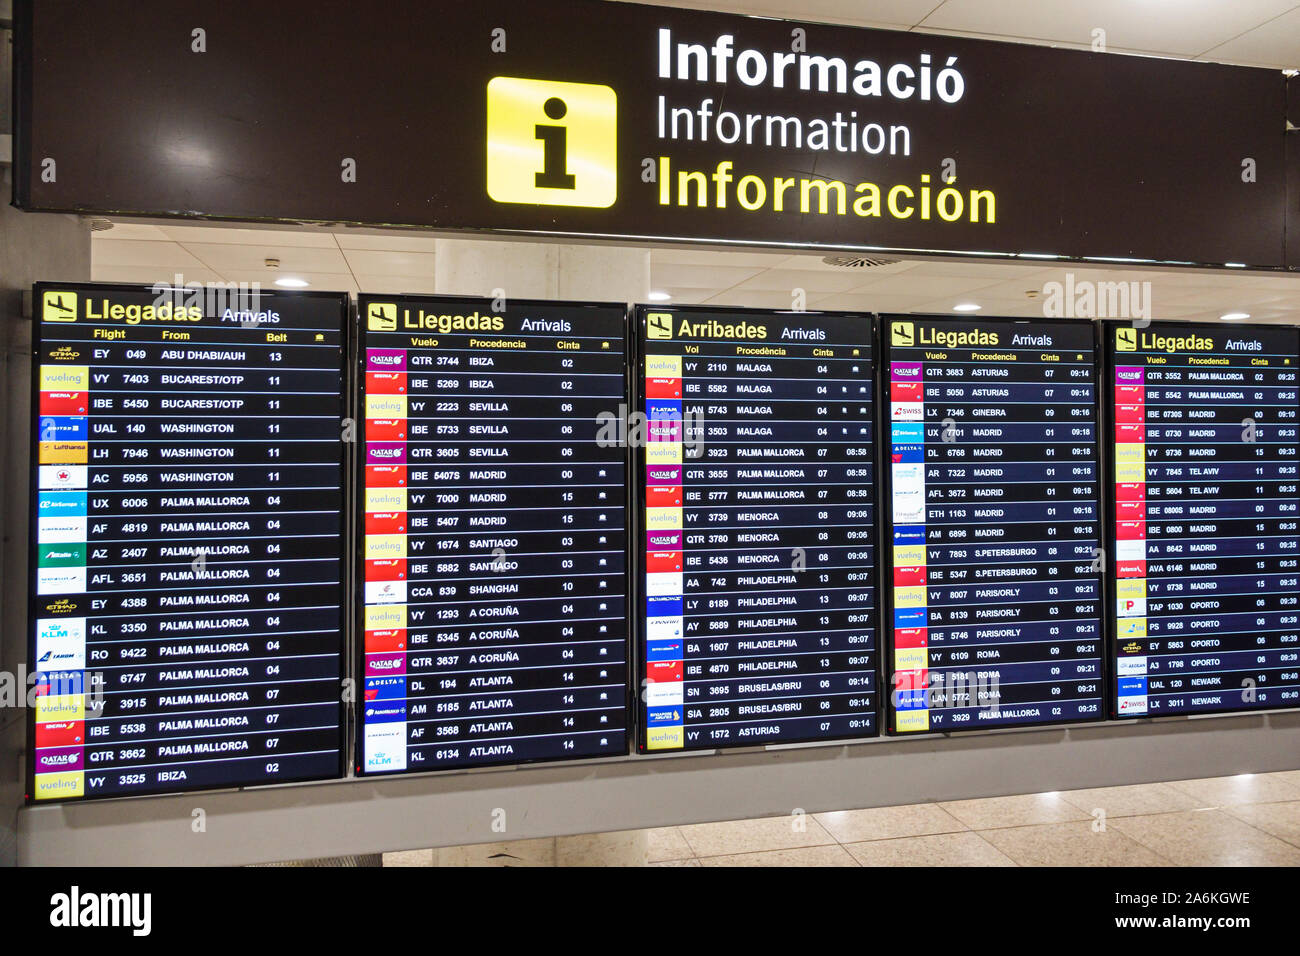 Barcelona Spanien,Katalonien Barcelona-El Prat Josep Tarradellas Airport BCN,Terminal,Ankunftshalle,Fluginformationen,mehrere Sprachen,Schild,Englisch C Stockfoto